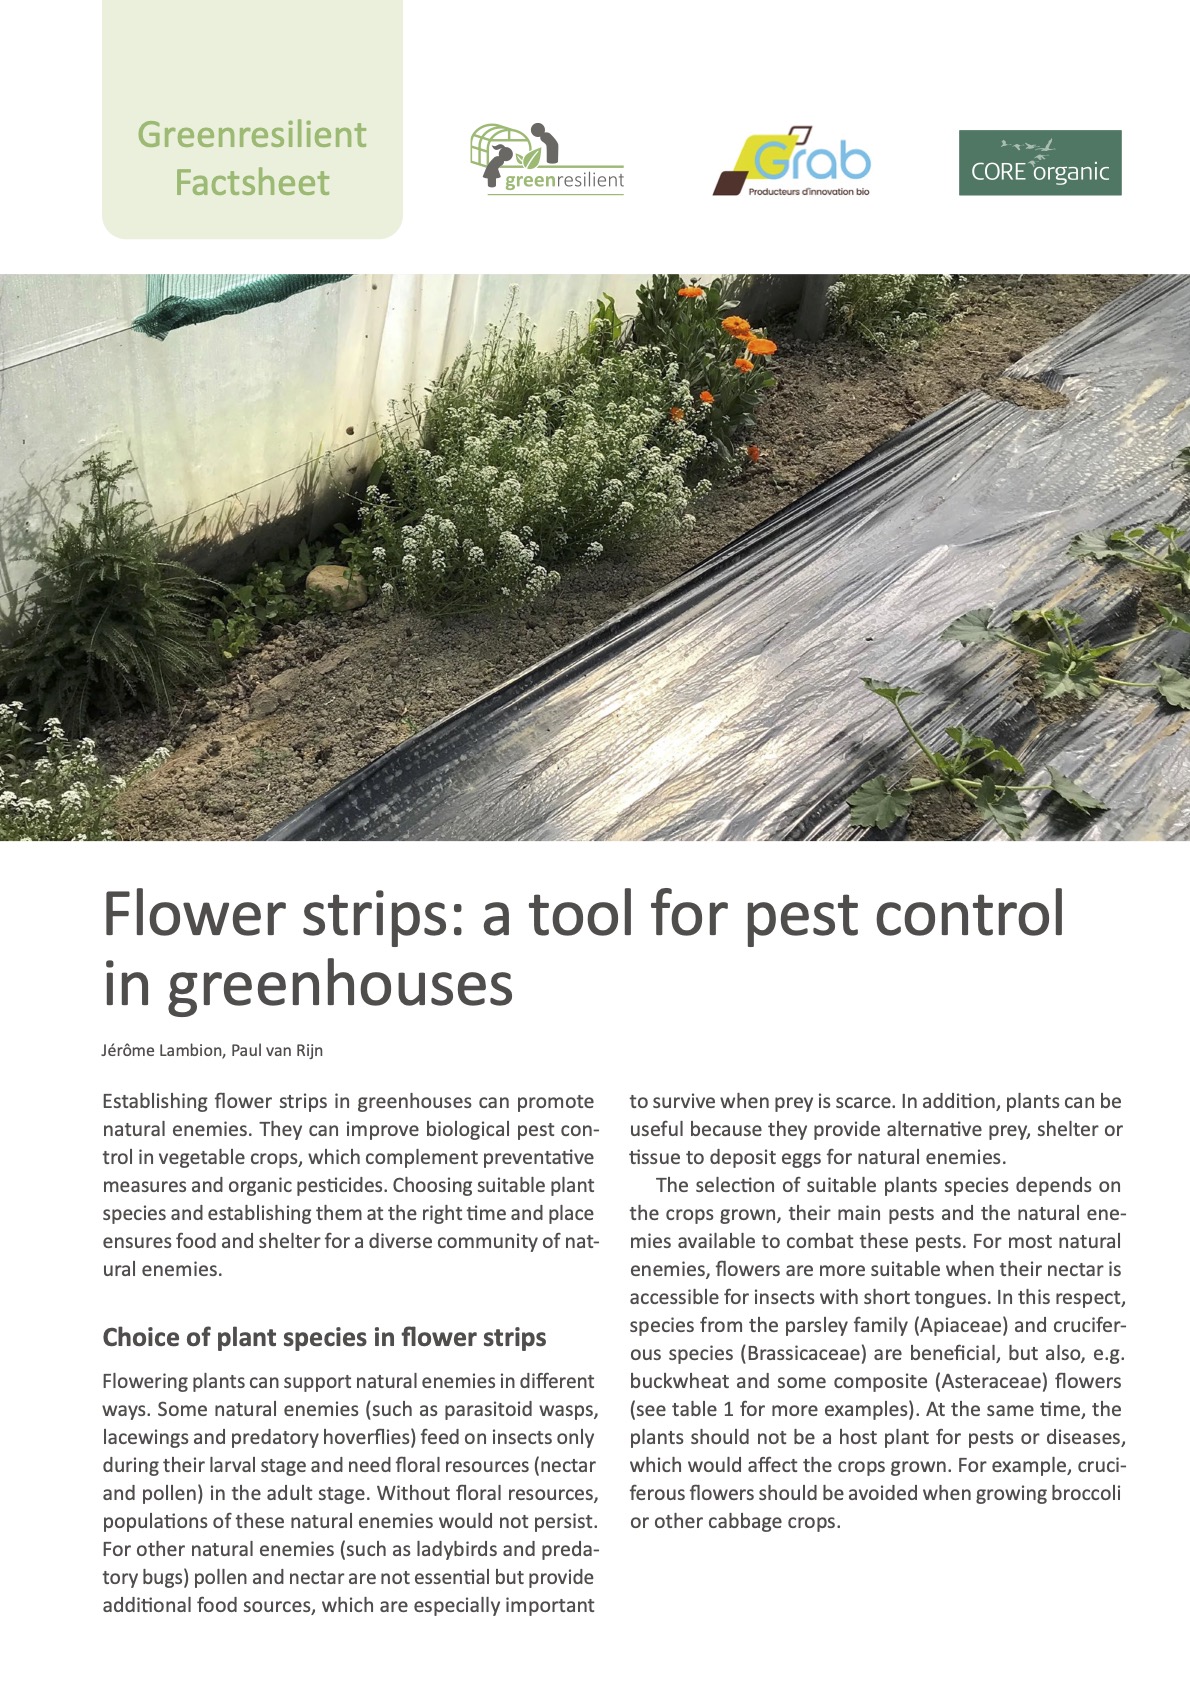 Strisce fiorite: uno strumento per il controllo dei parassiti nelle serre (Greenresilient Factsheet)